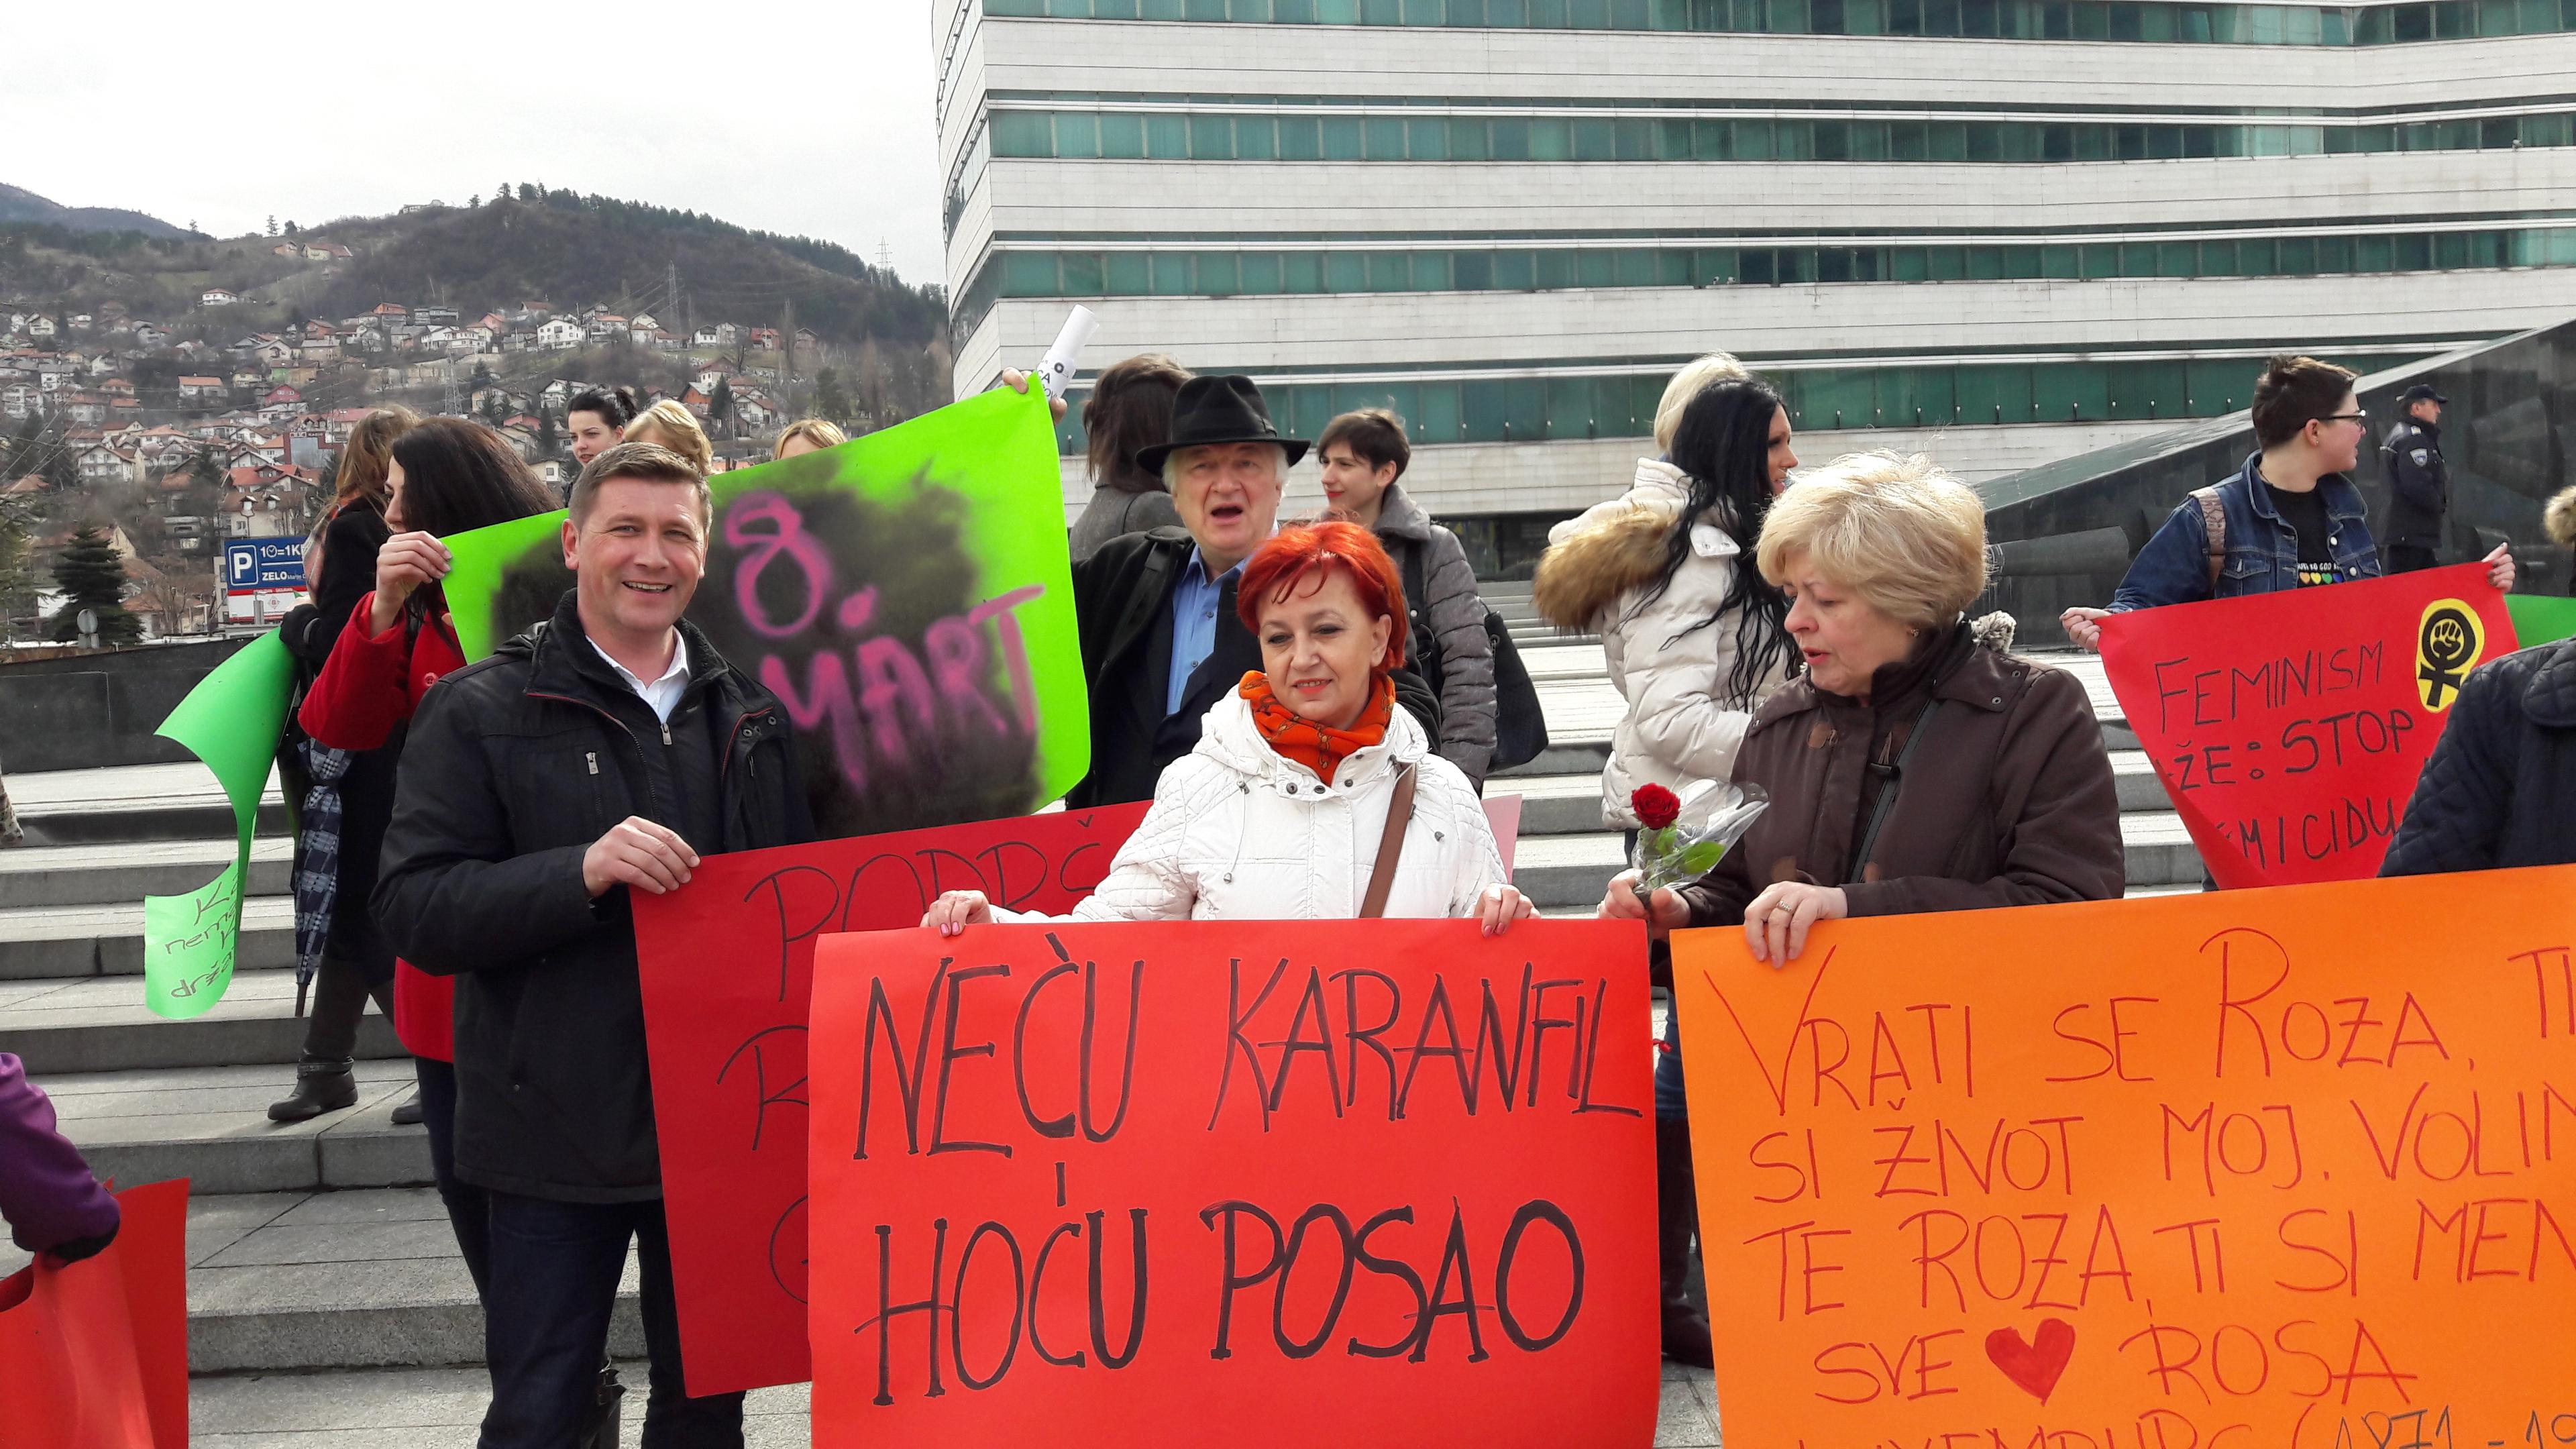 Osmomartovska šetnja u Sarajevu: Neću karanfil, hoću posao